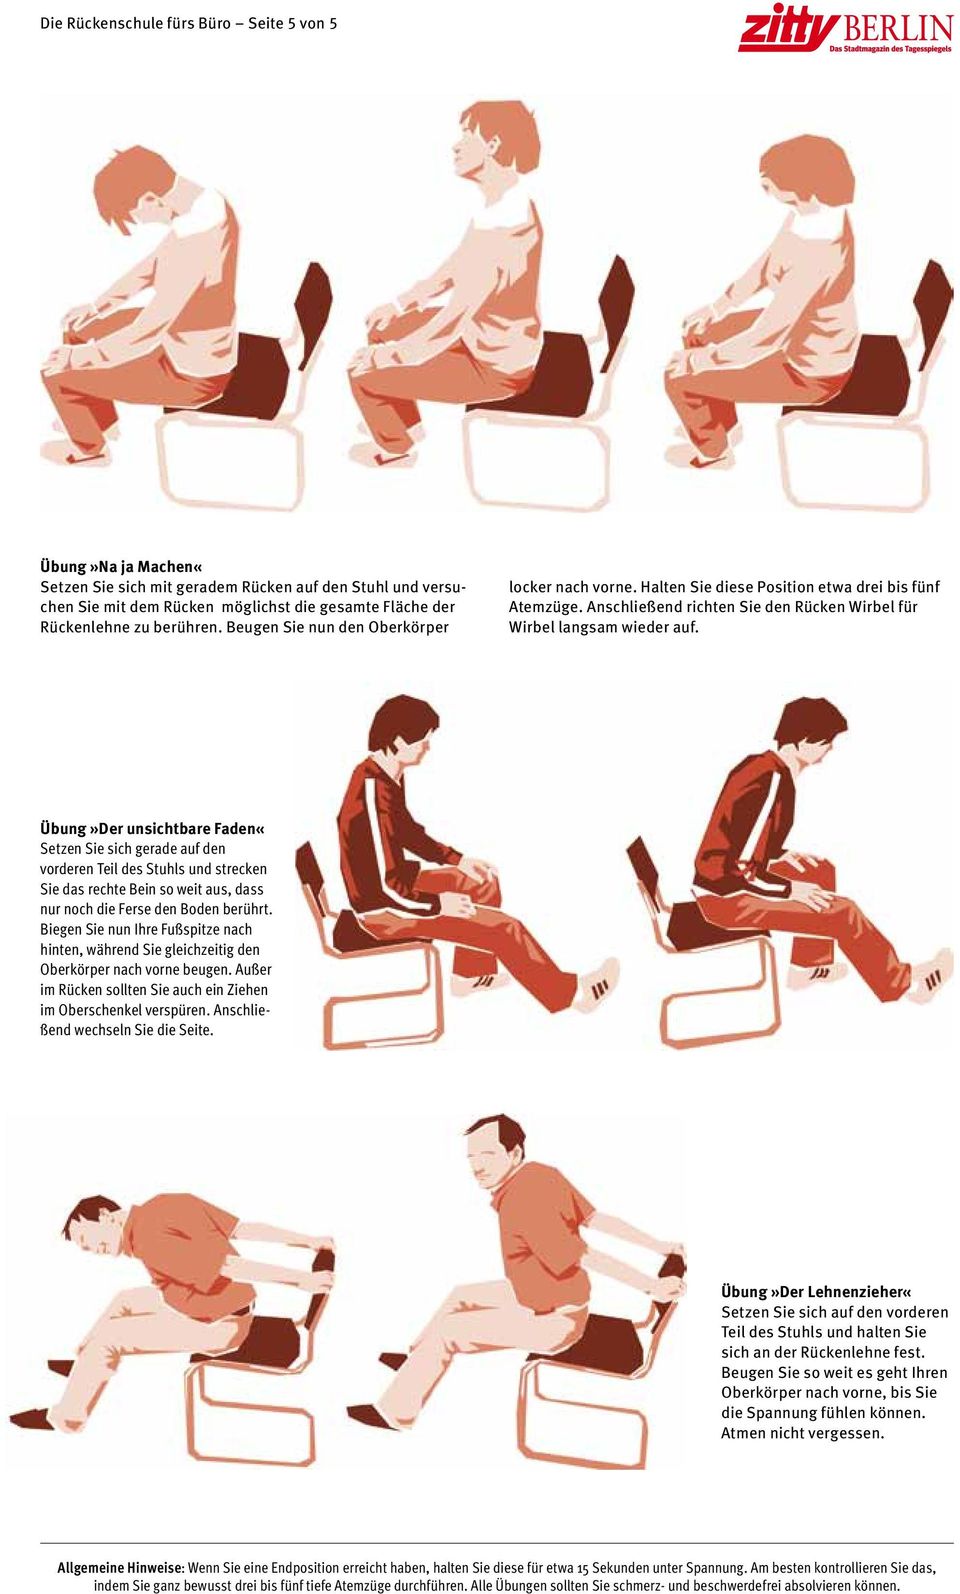 Übung»Der unsichtbare Faden«Setzen Sie sich gerade auf den vorderen Teil des Stuhls und strecken Sie das rechte Bein so weit aus, dass nur noch die Ferse den Boden berührt.